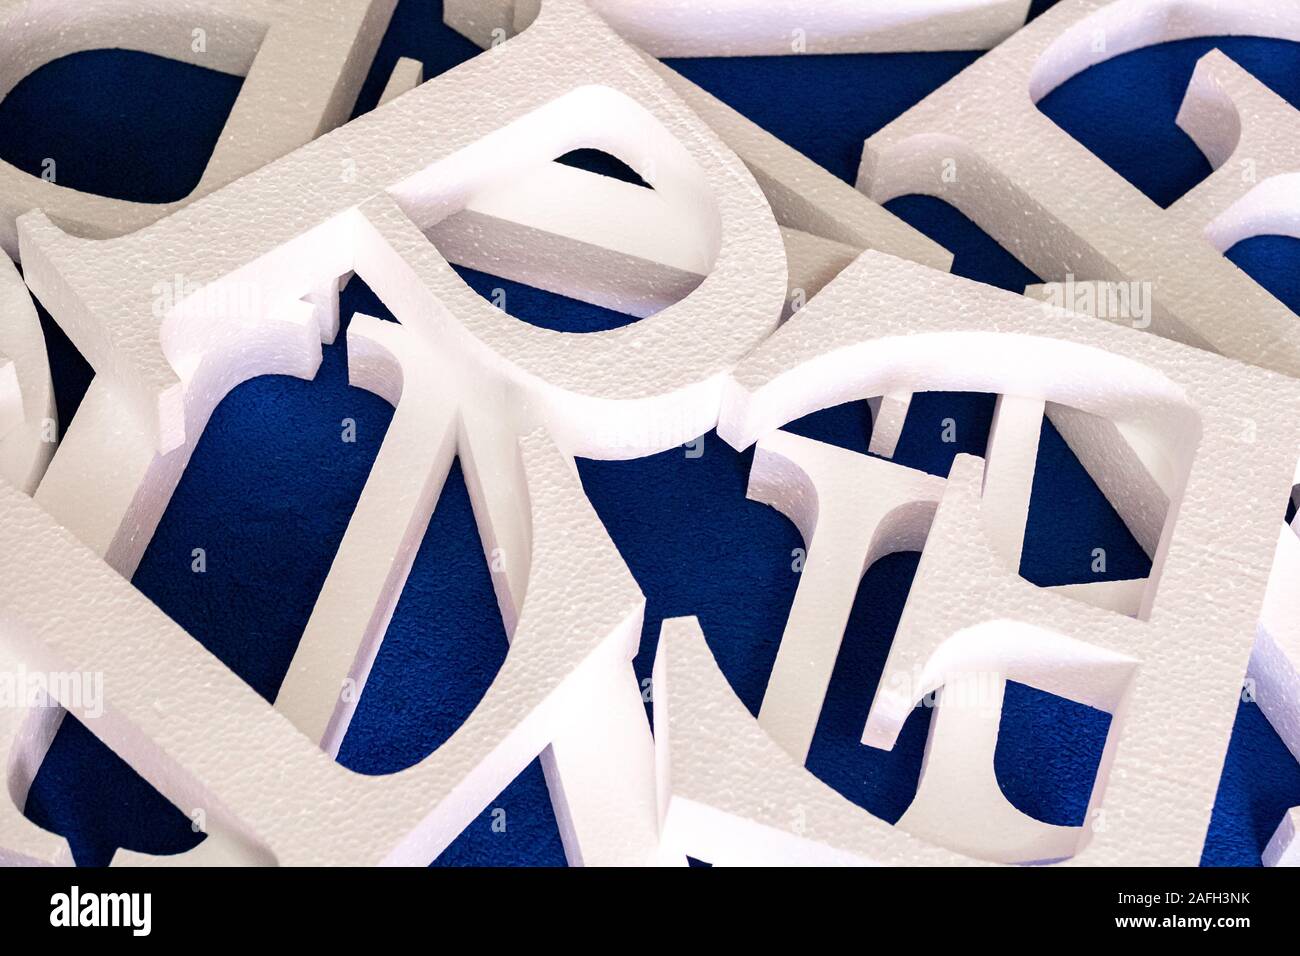 Lettere bianche tagliate fuori della schiuma senza verniciatura su uno sfondo blu. vuoto per la decorazione, rendendo il logo Foto Stock